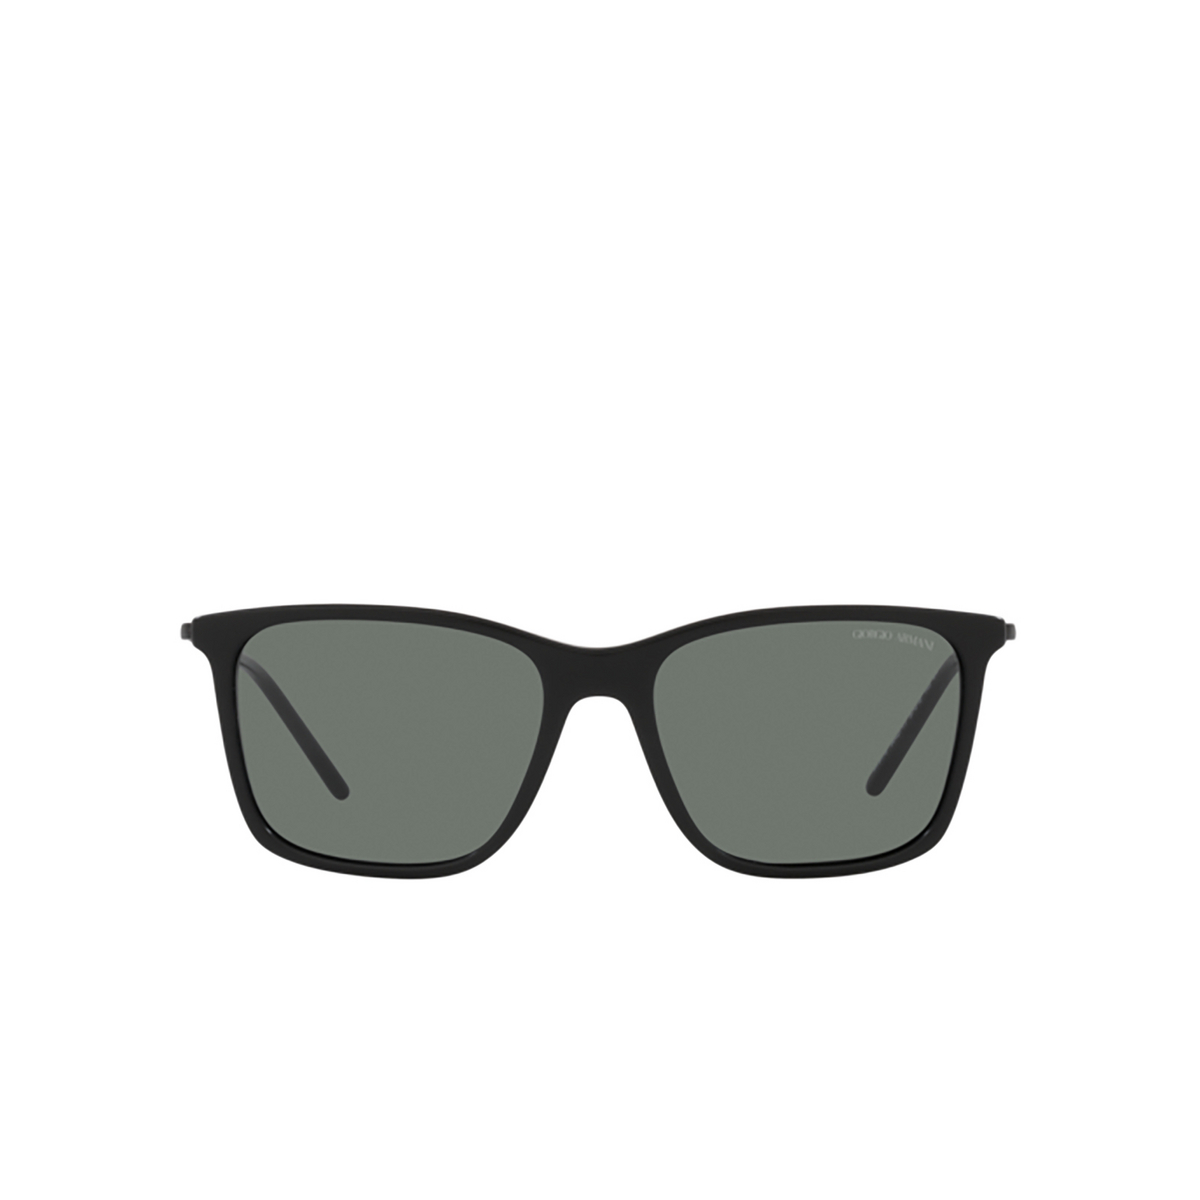 Giorgio Armani AR8176 Sunglasses 504211 Matte Black - front view